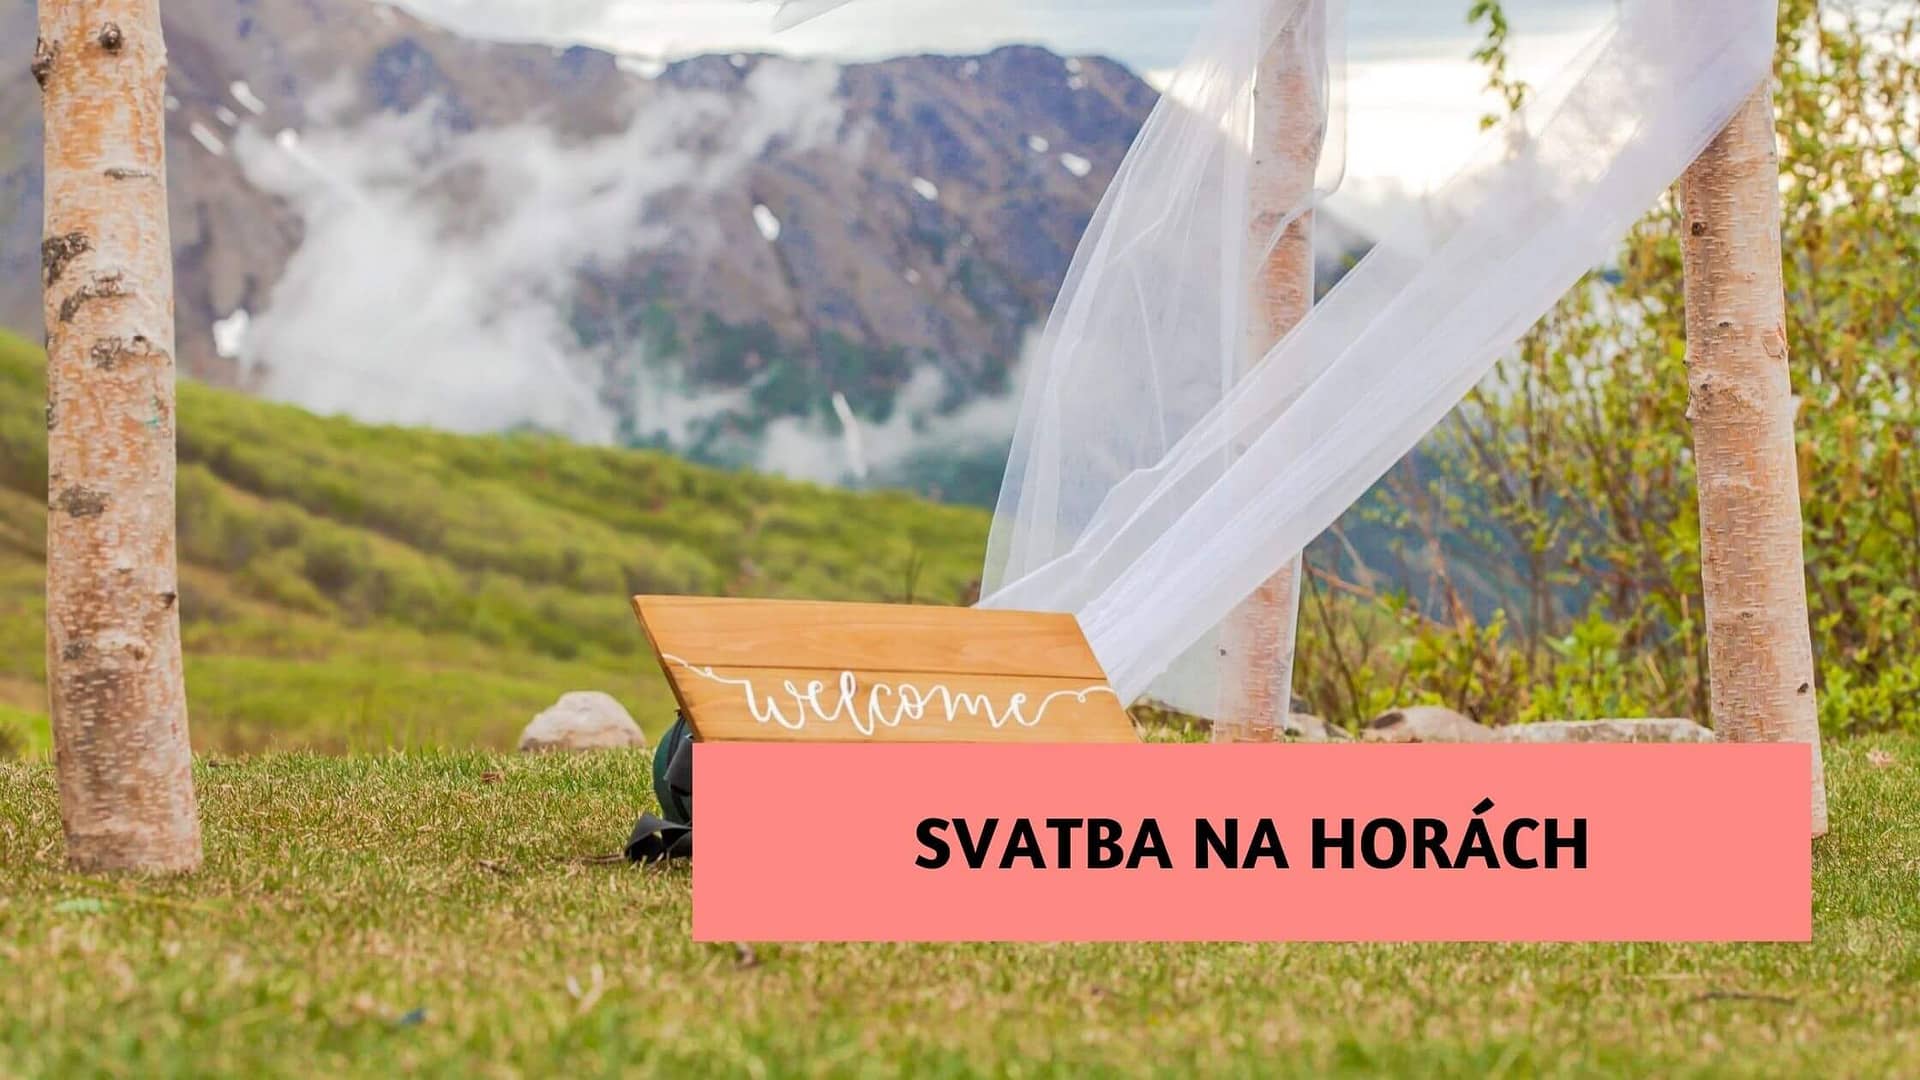 Svatba na horách může být romantická v létě i v zimě